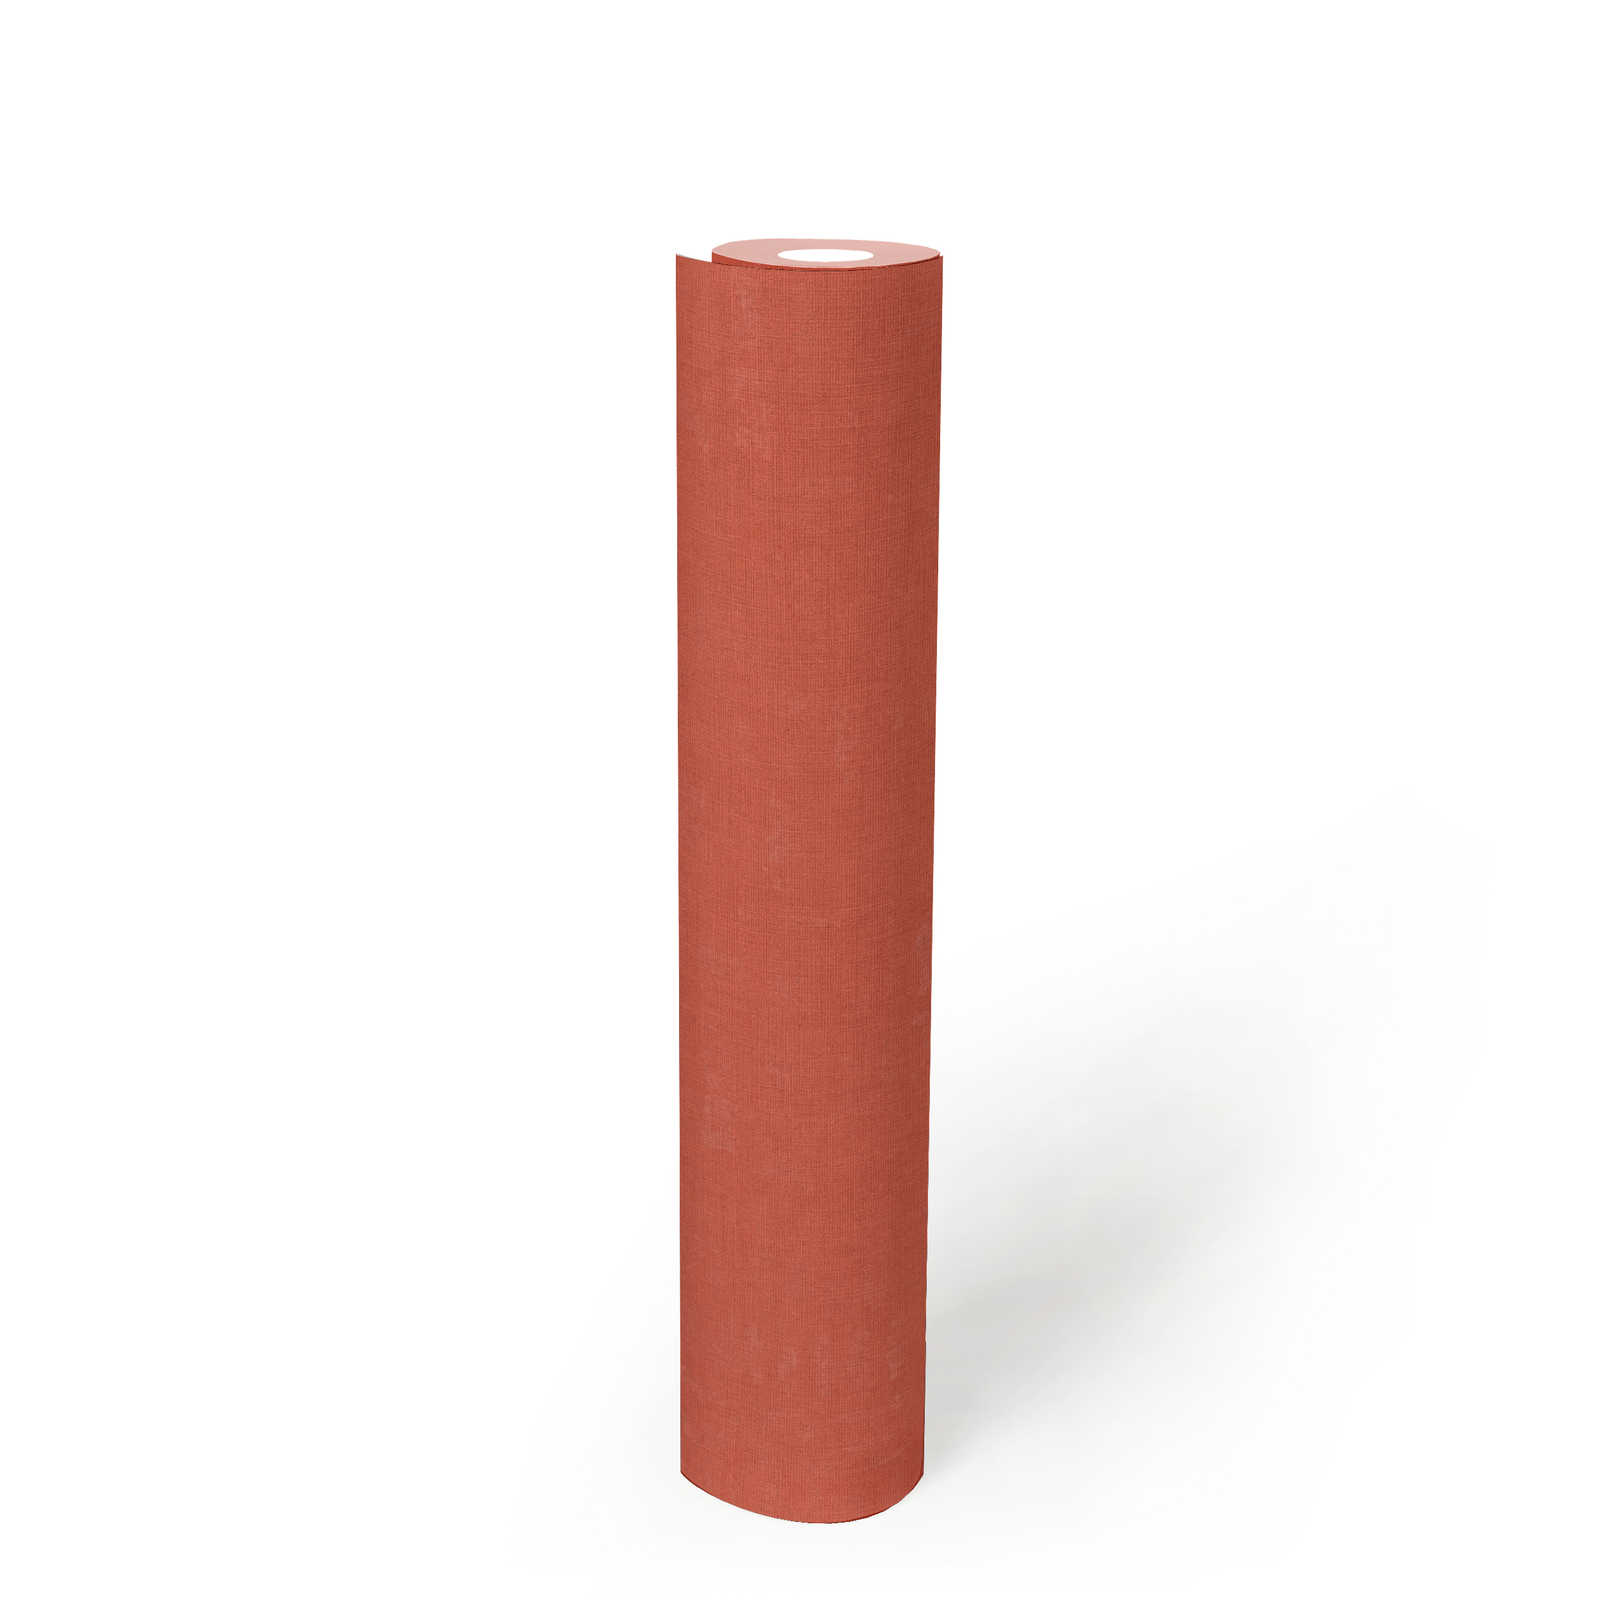             Einfarbige Tapete mit meliertem Muster – Orange, Rot
        